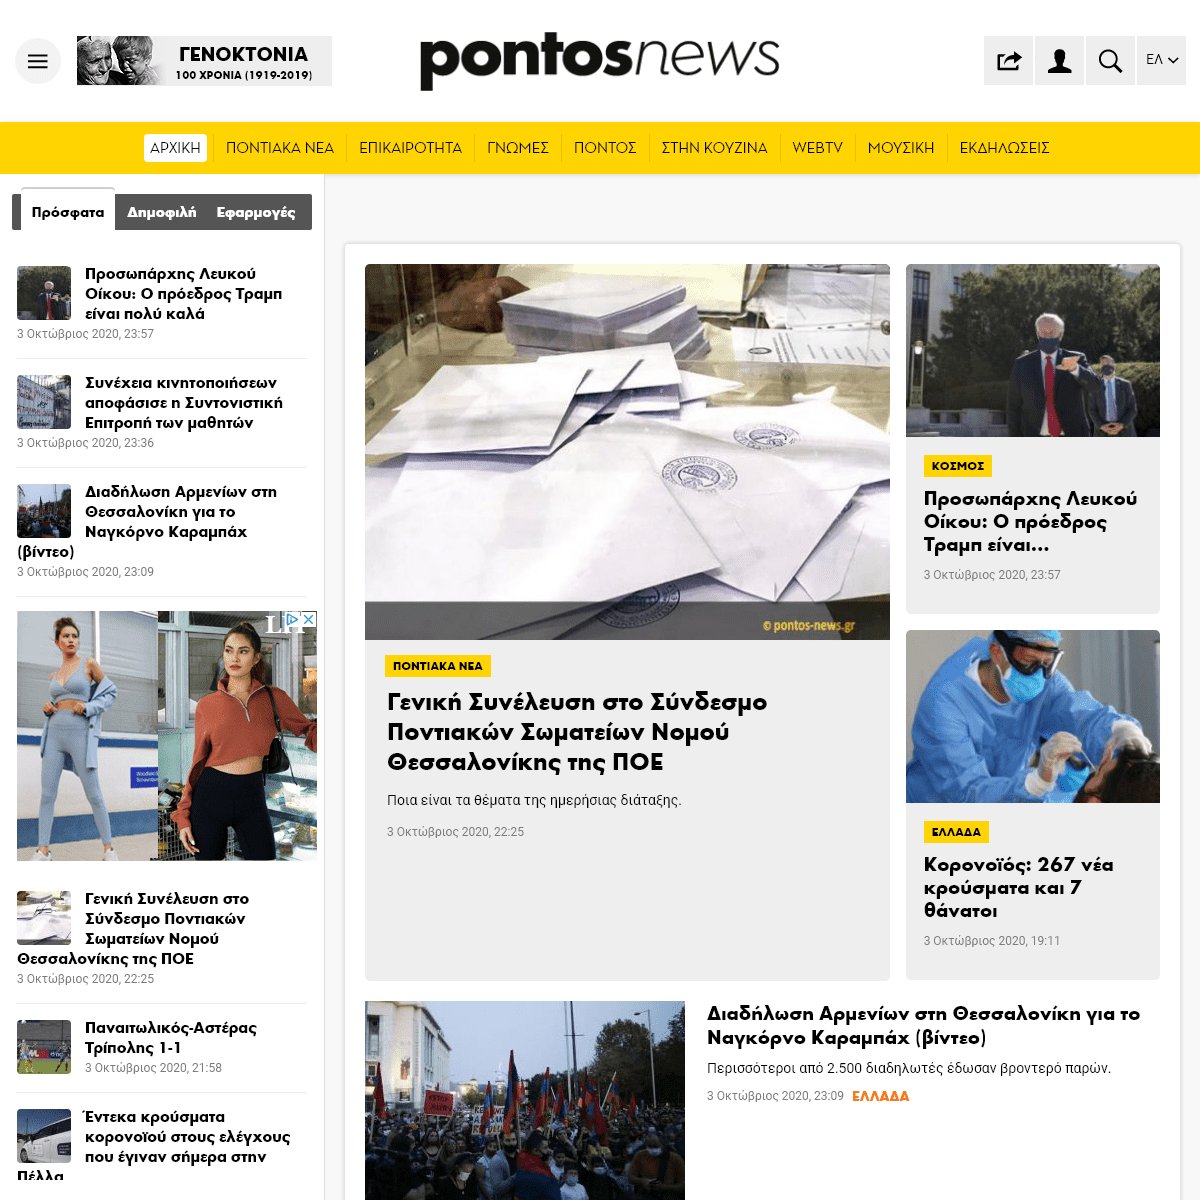 A complete backup of pontos-news.gr